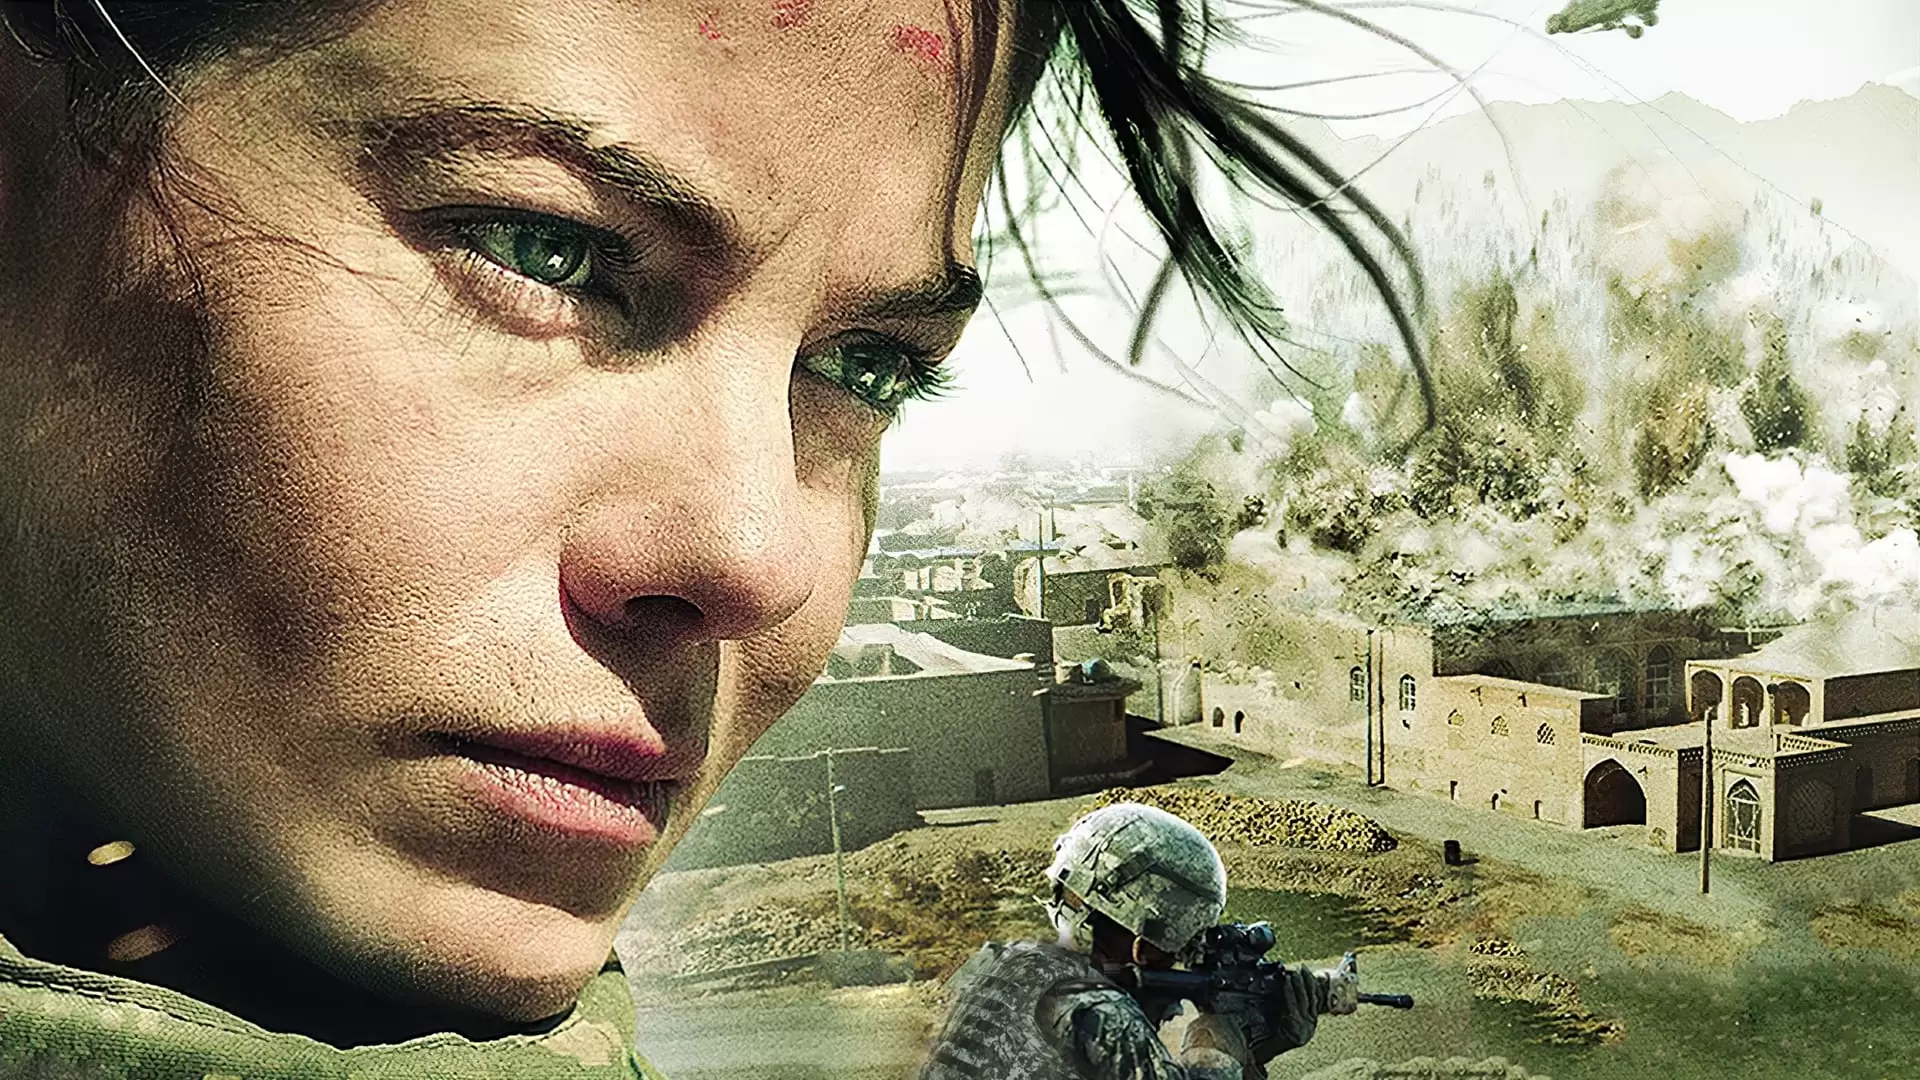 دانلود فیلم Fort Bliss 2014 با زیرنویس فارسی